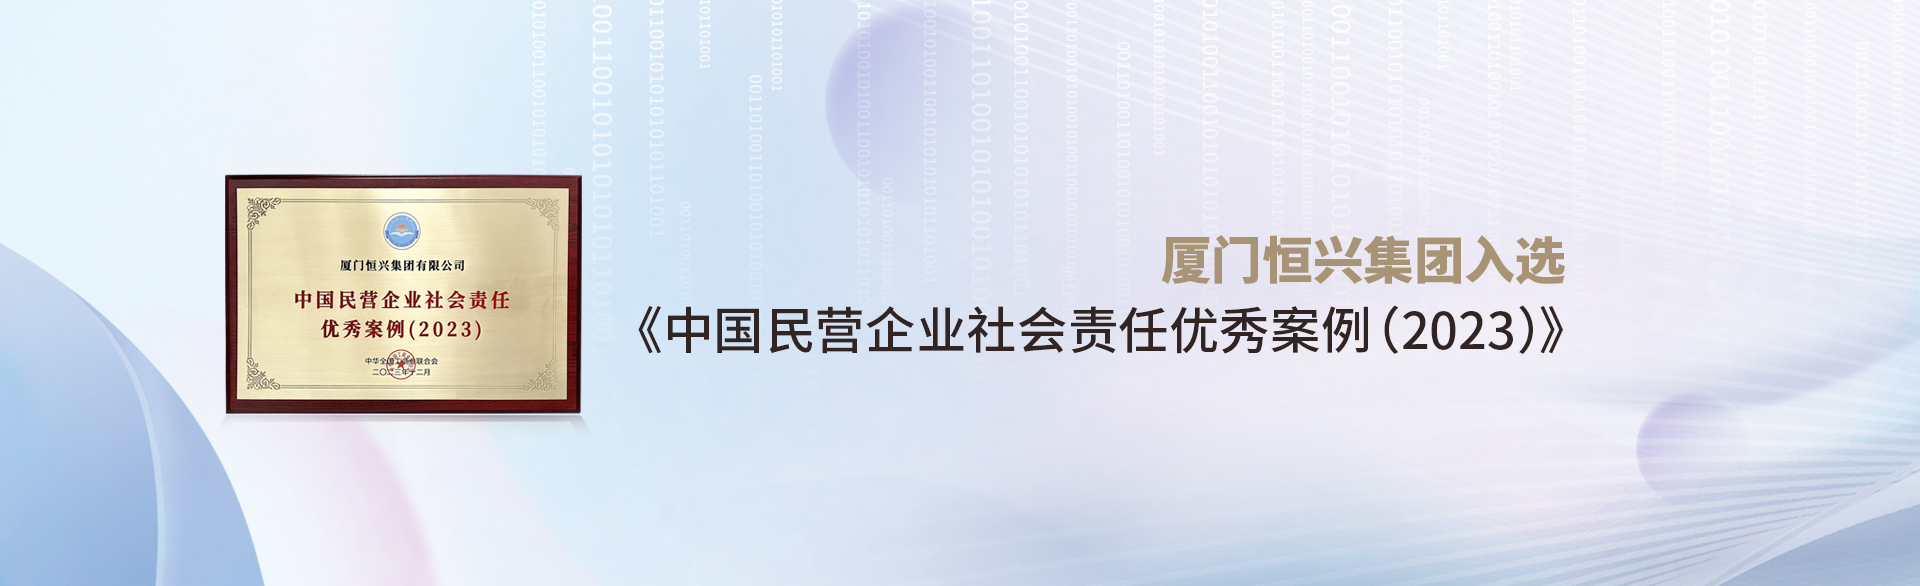 厦门yd2333云顶电子游戏入选《中国民营企业社会责任优秀案例(2023)》